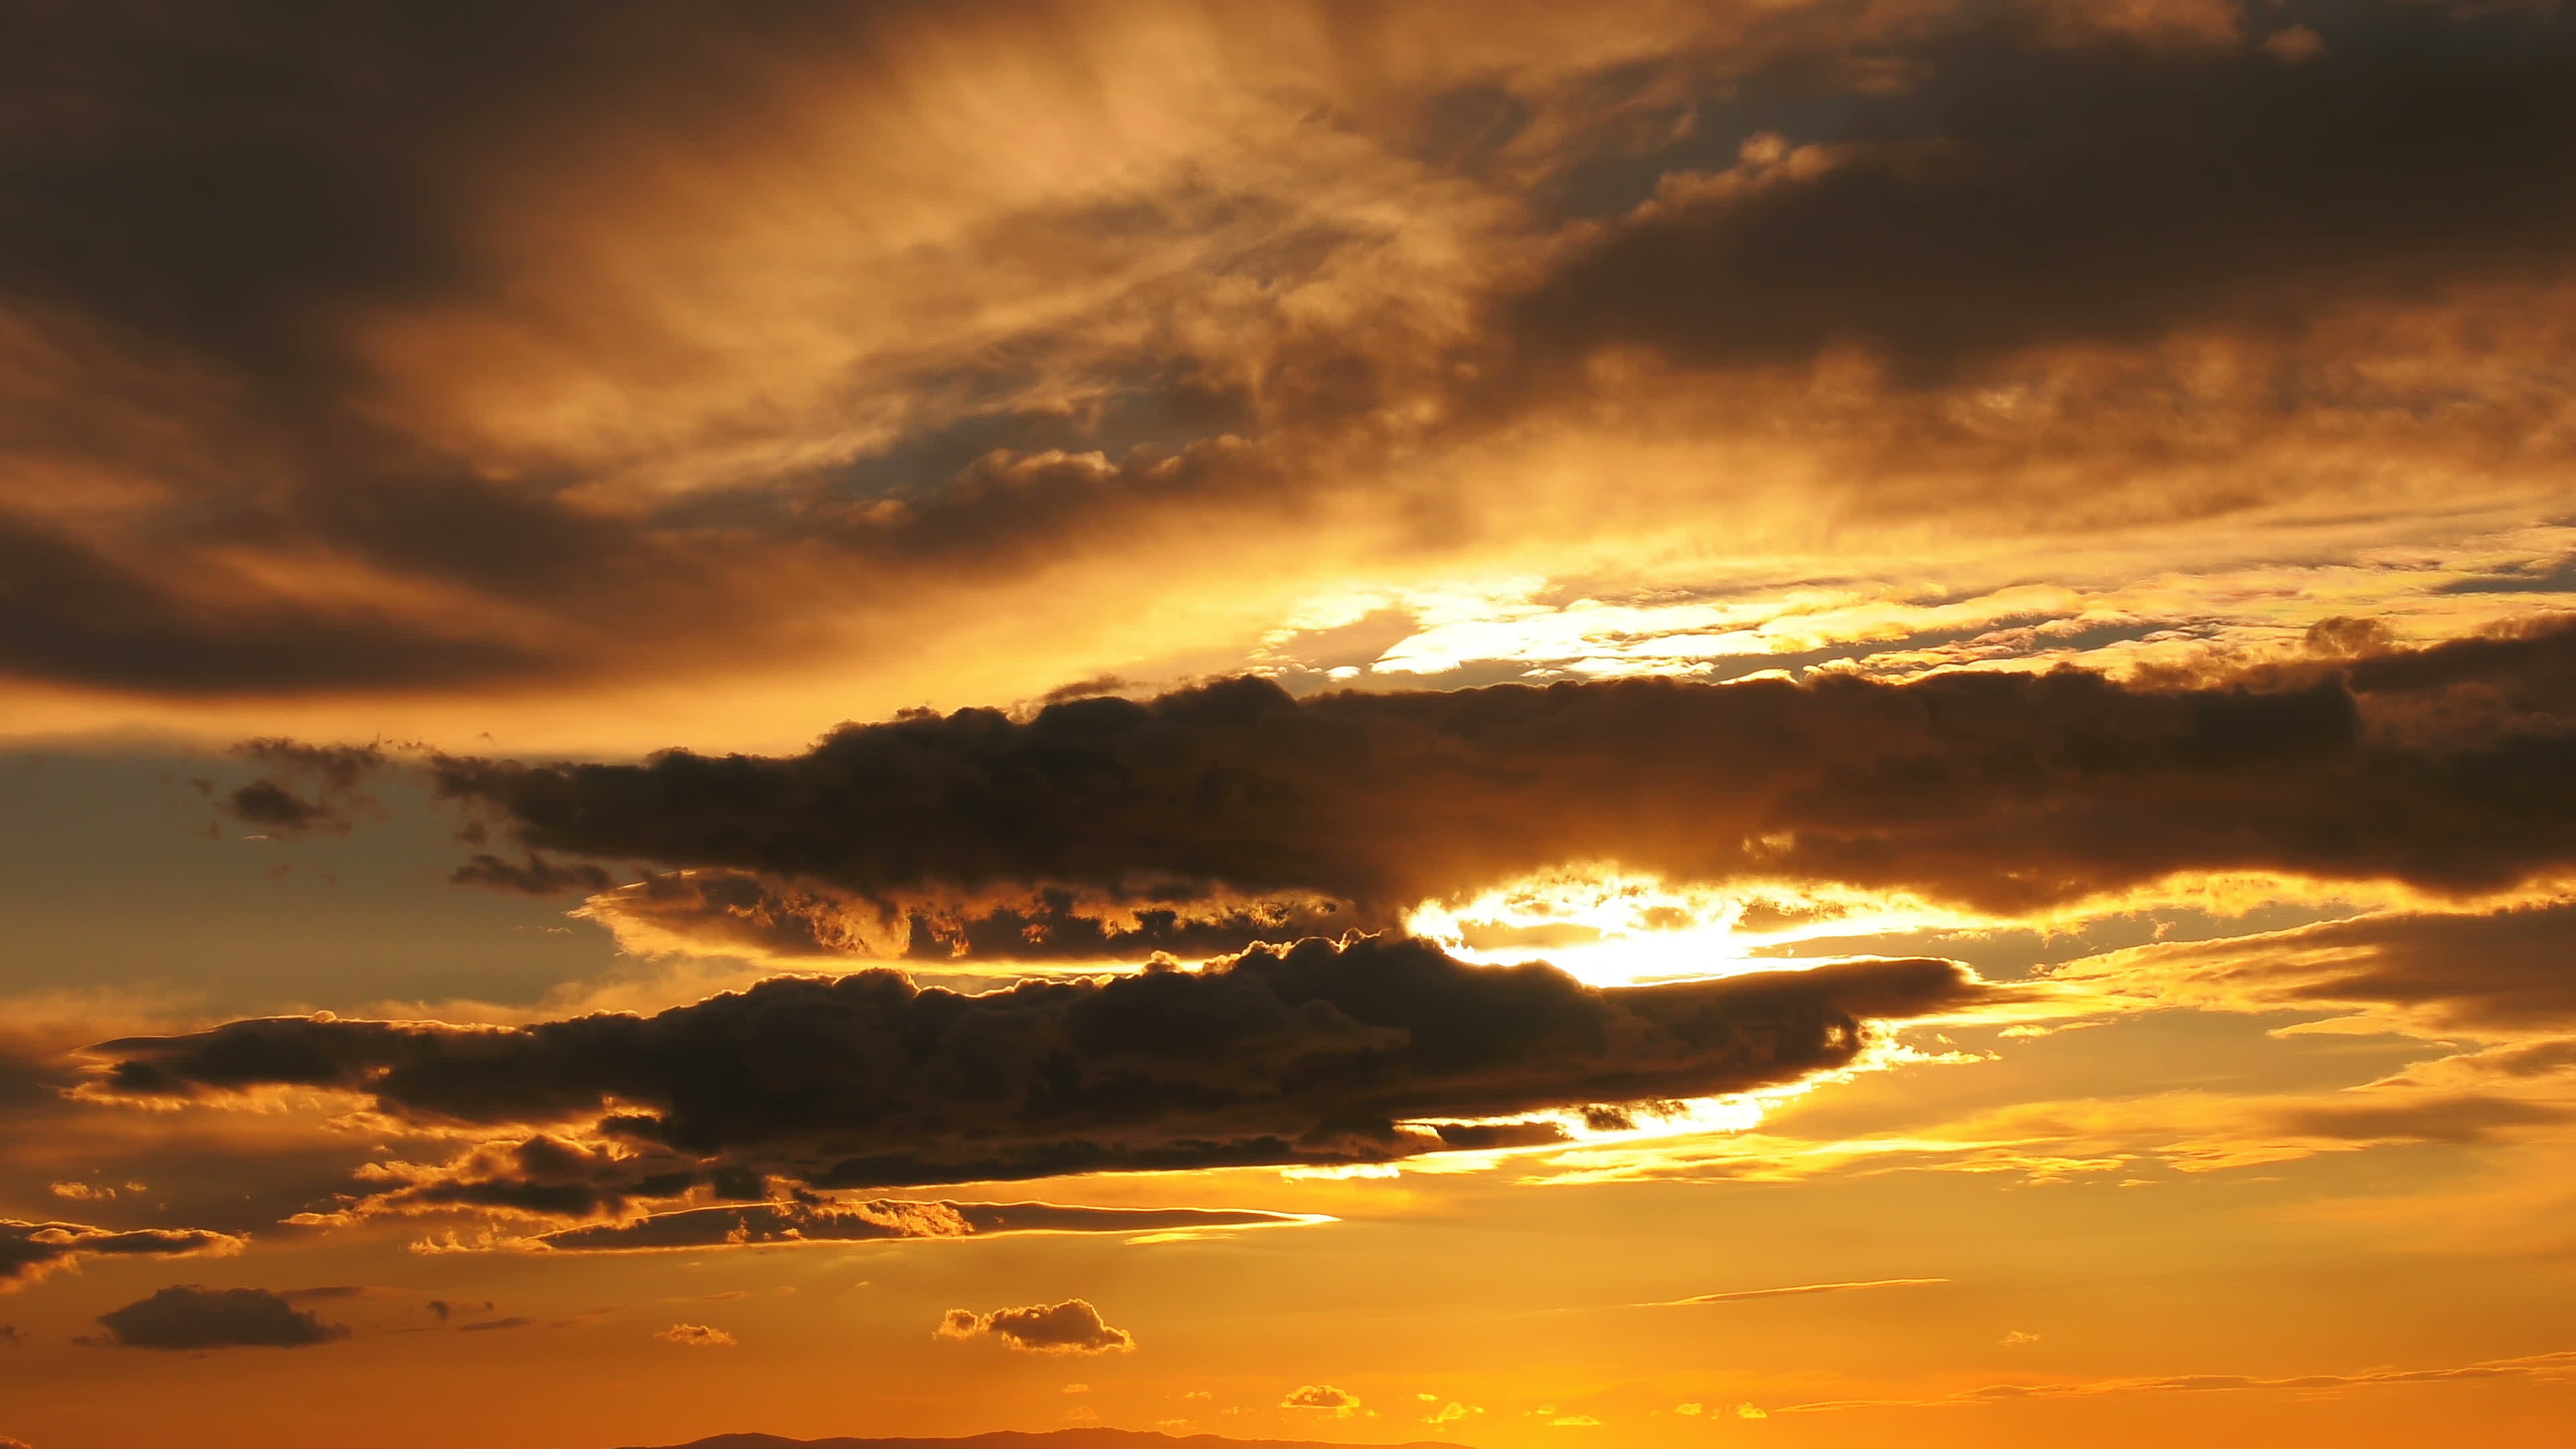 Sunset Clouds Stock Video Footage for Free Download - Thấy sự đẹp diệu kỳ của những bức tranh hoàng hôn tuyệt đẹp với Sunset stock footage. Tận hưởng những giây phút thư giãn ngày cuối tuần với những cảnh đẹp như tranh vẽ.